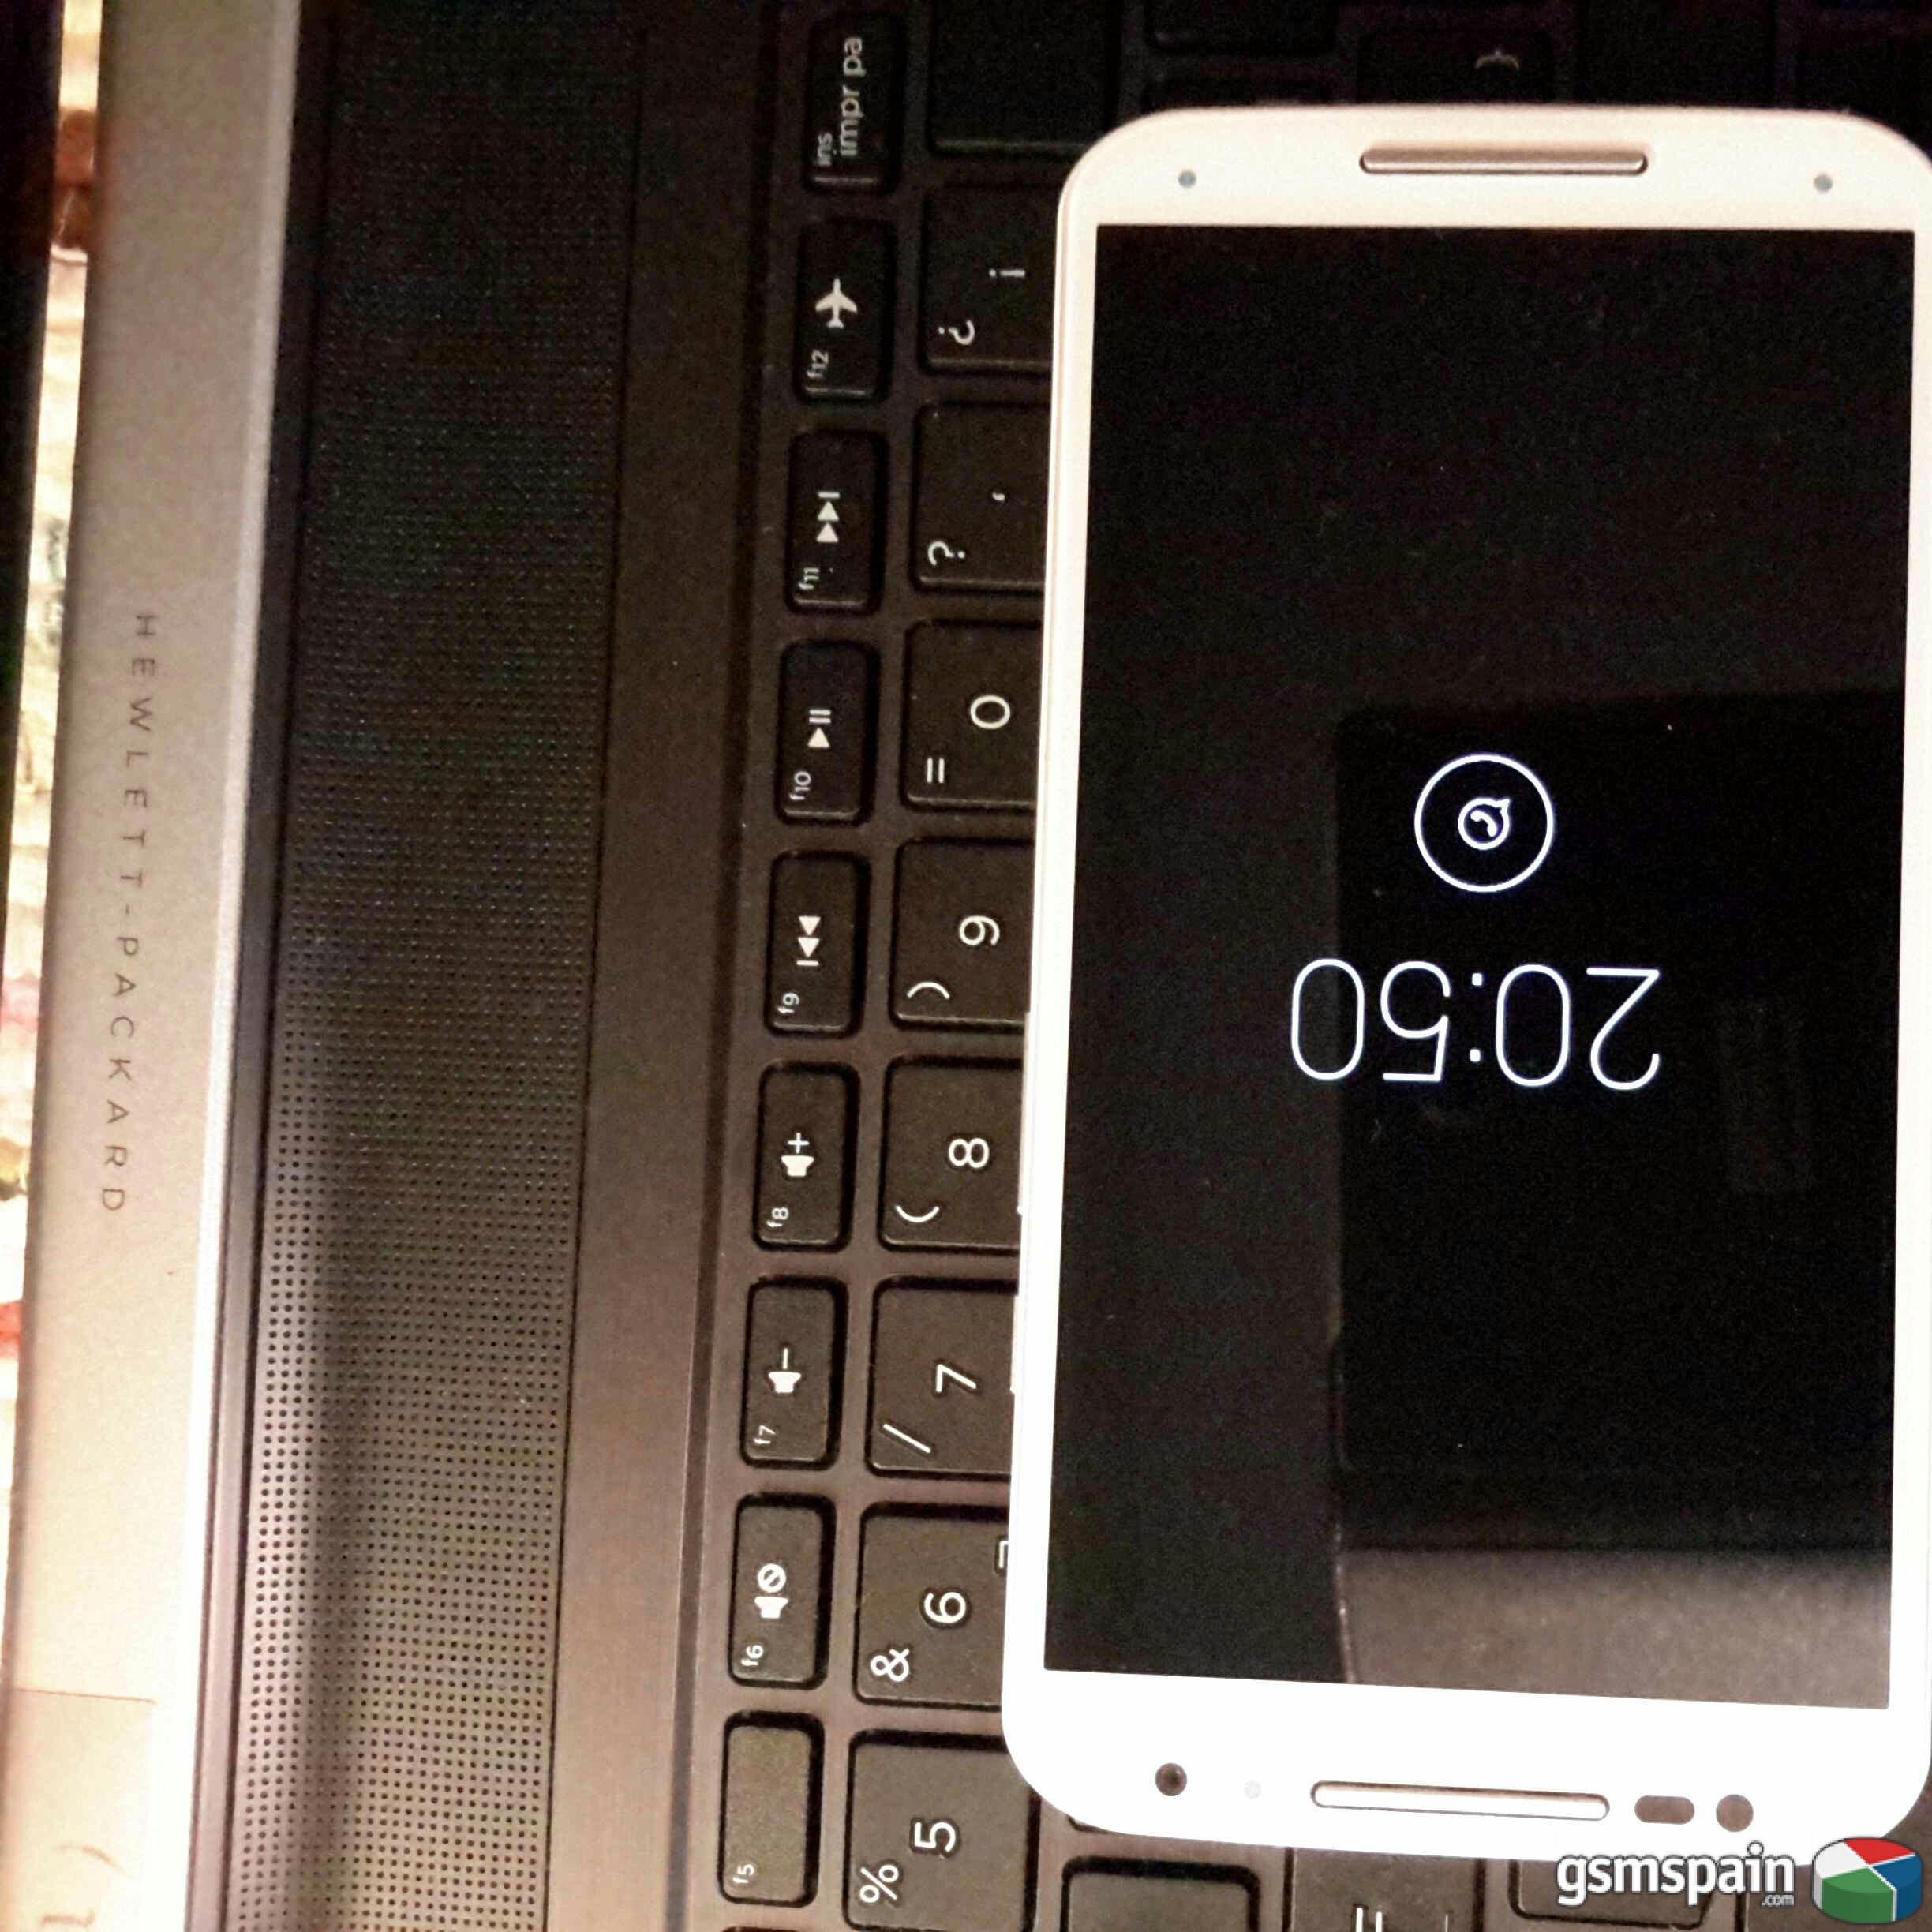 [VENDO] Motorola Moto X 16GB Blanco Bamb perfecto estado. Factura